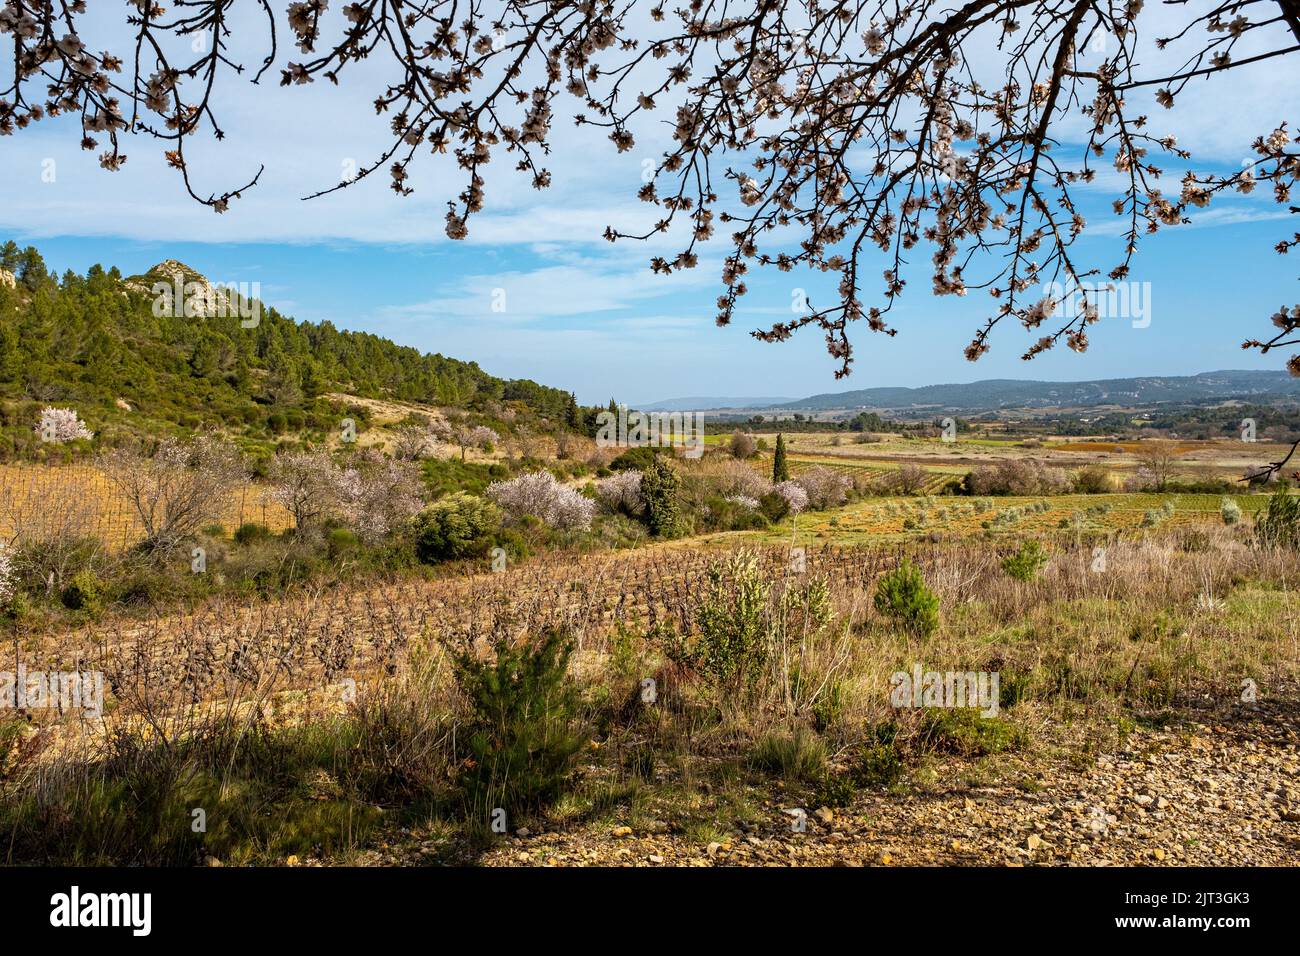 Blick auf das Weinland Corbiere in Südfrankreich, mit einigen blühenden Bäumen und ohne Menschen. Aufgenommen an einem sonnigen Wintertag Stockfoto